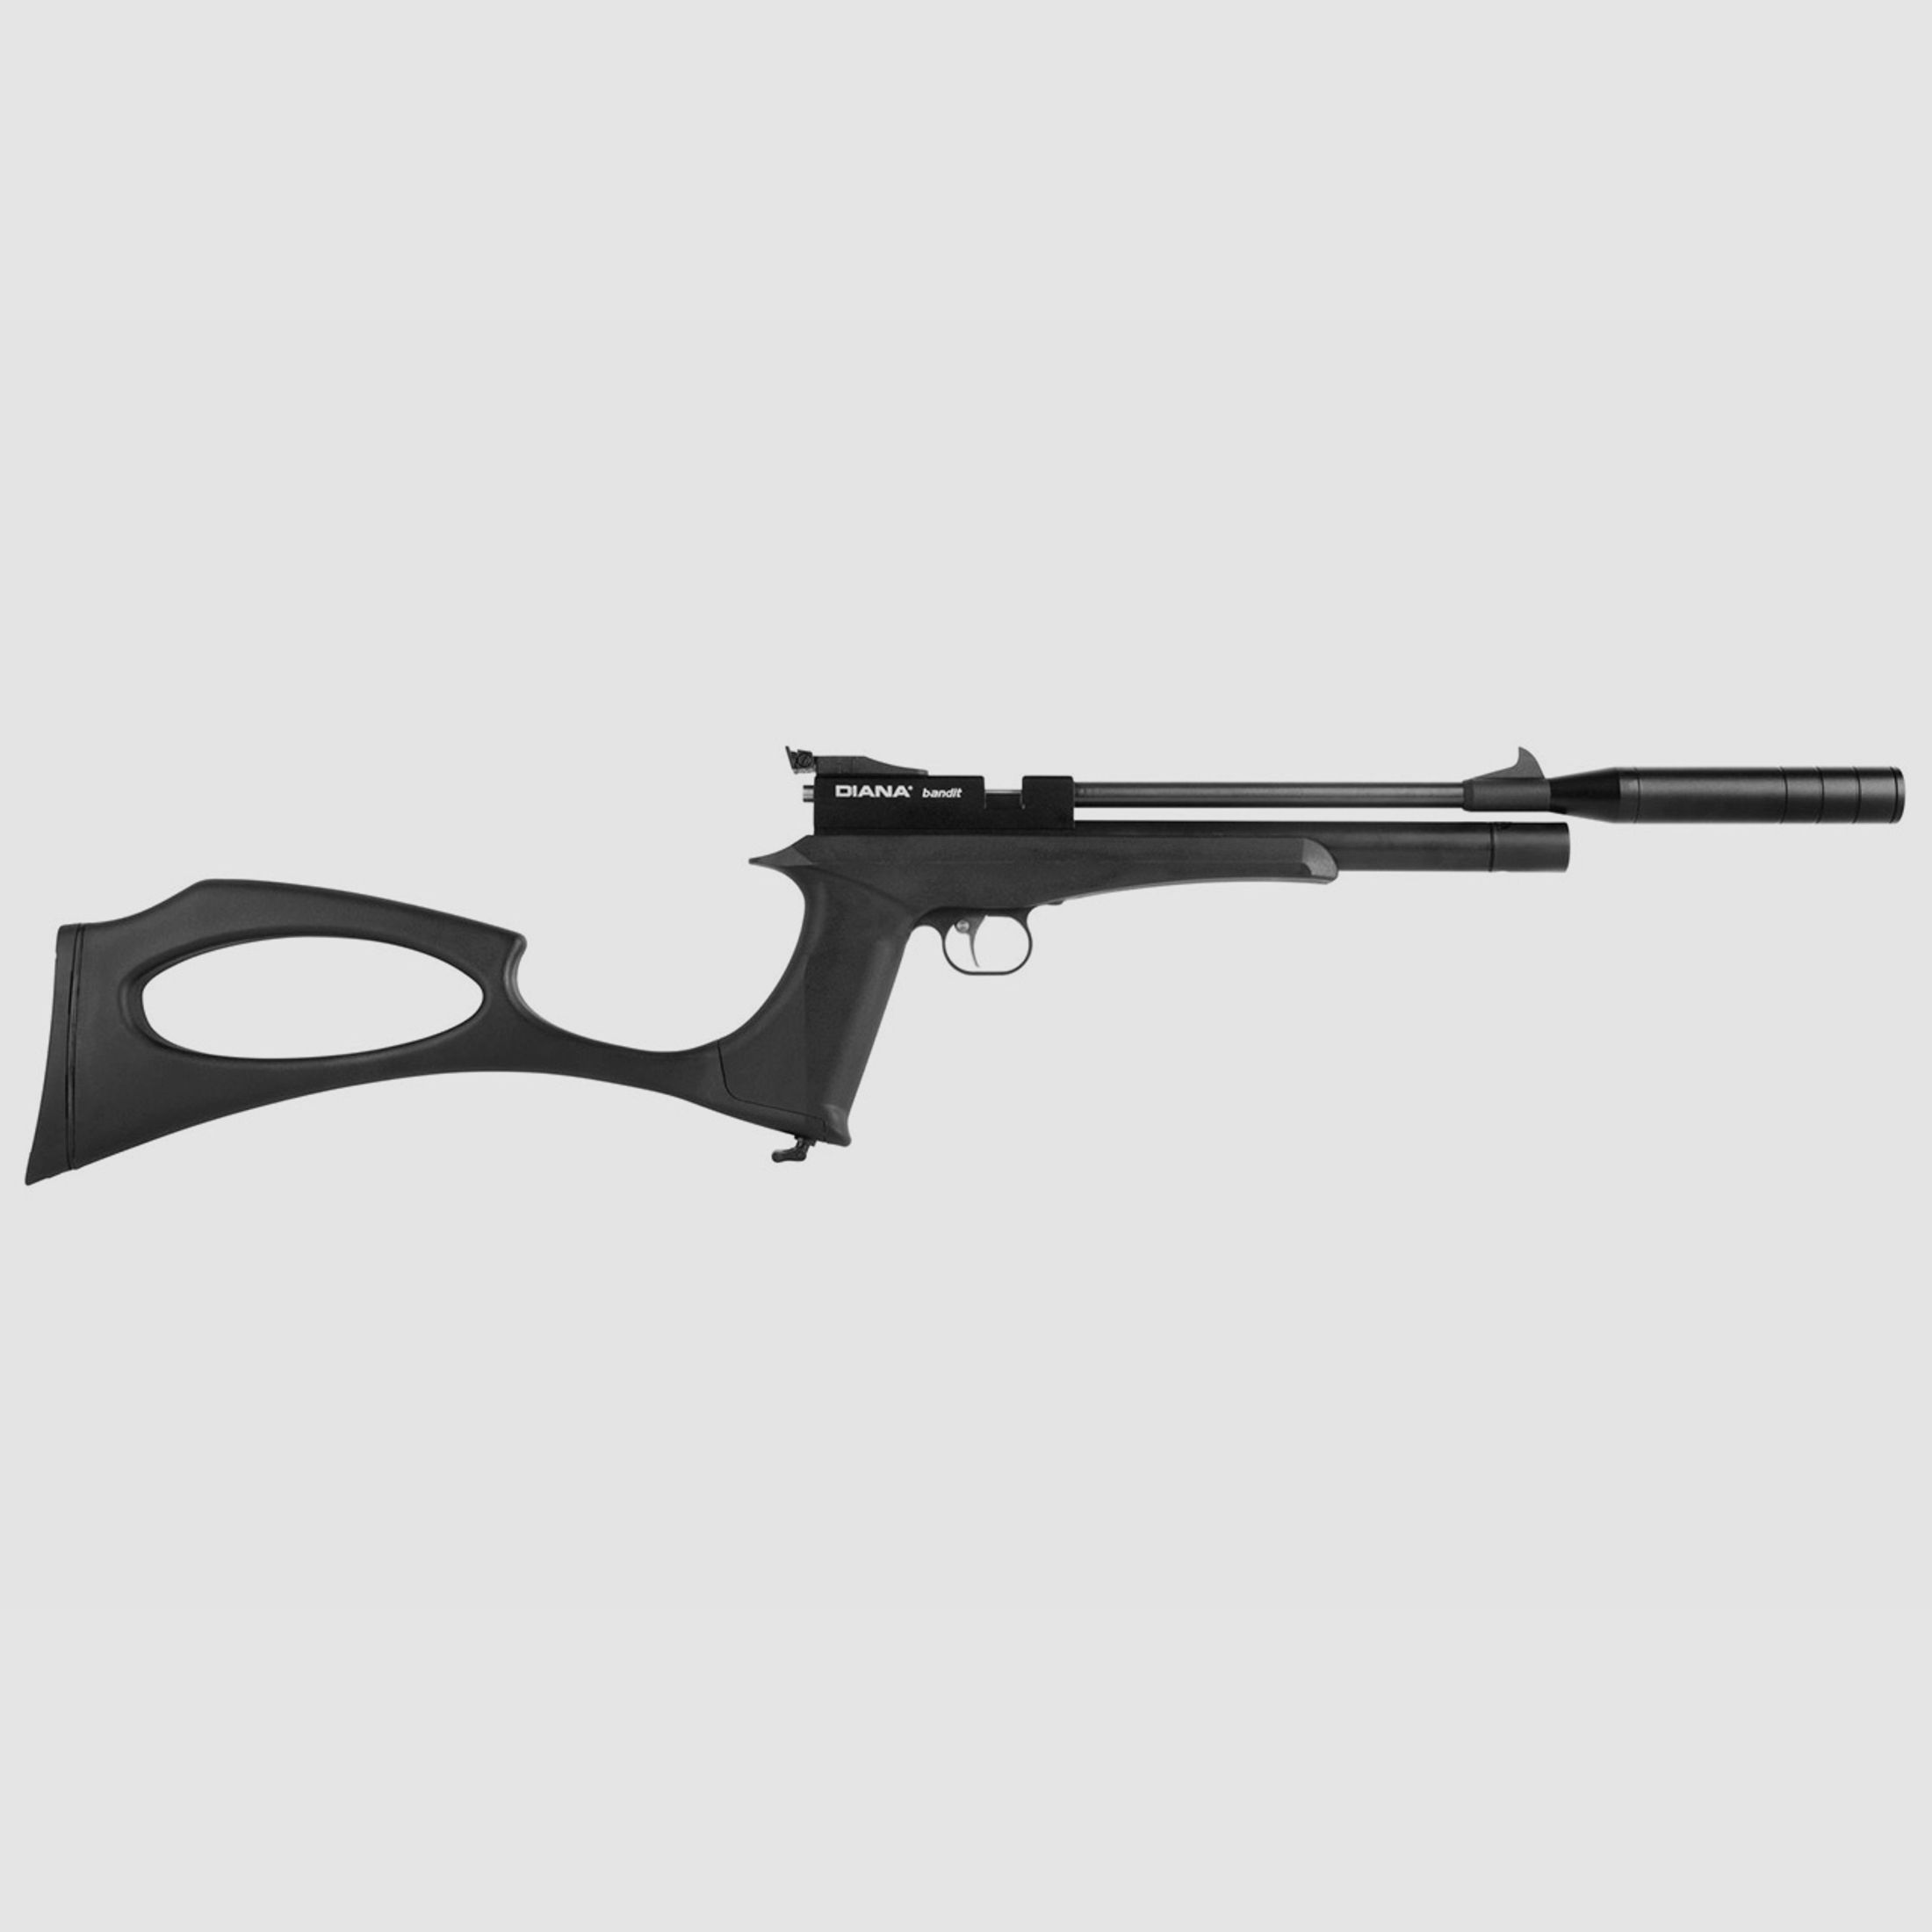 Pressluftpistole Diana bandit black Kunststoffgriff mit Hinterschaft SchalldĂ¤mpfer Kaliber 5,5 mm (P18)